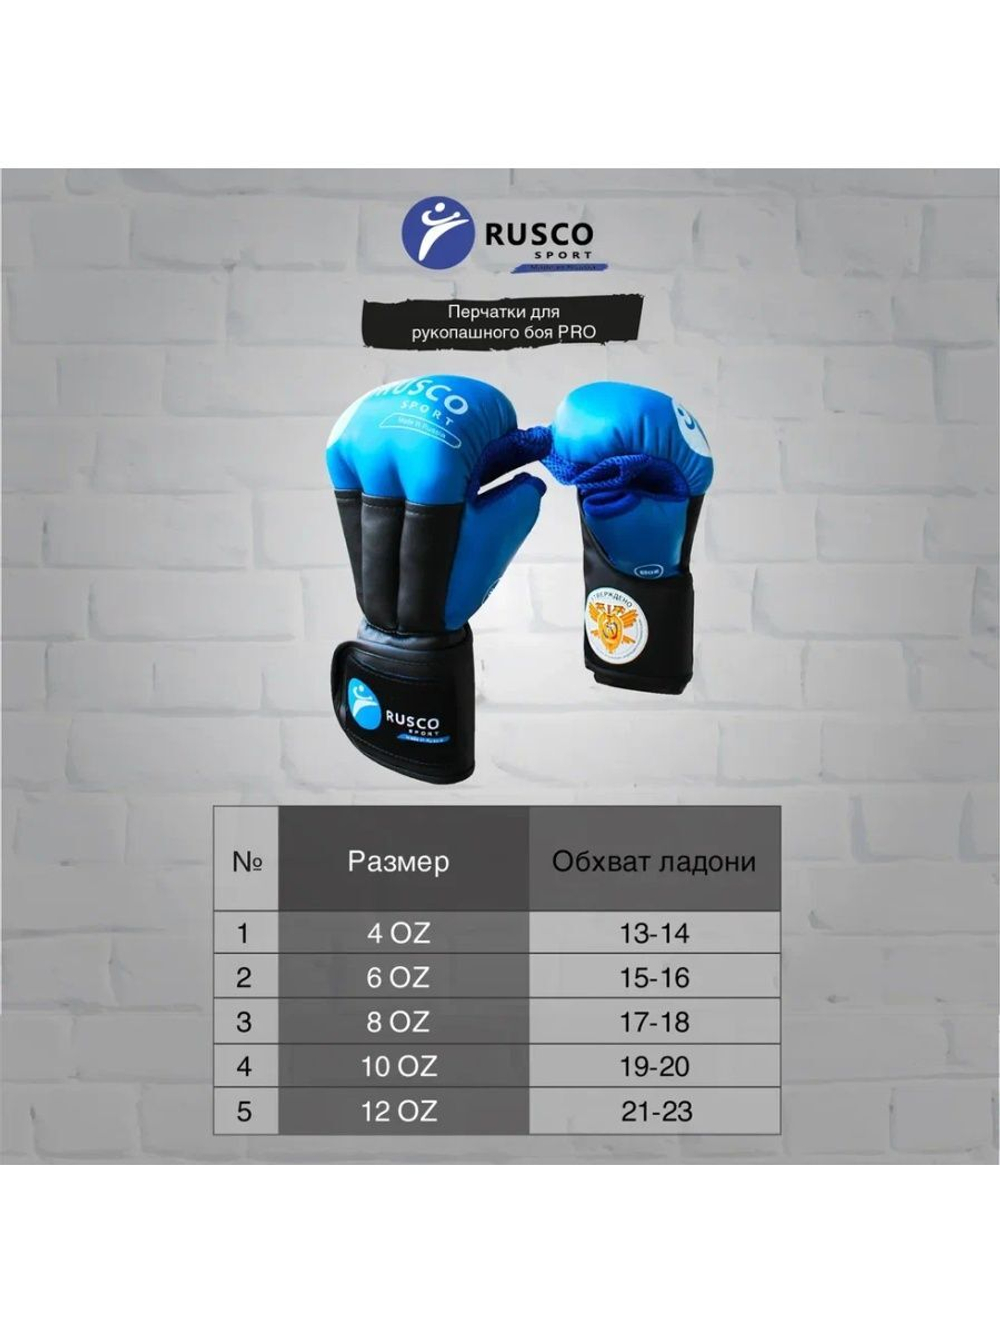 Перчатки для Рукопашного боя Rusco Sport Pro, Одобрены ФРБ, С Печатью